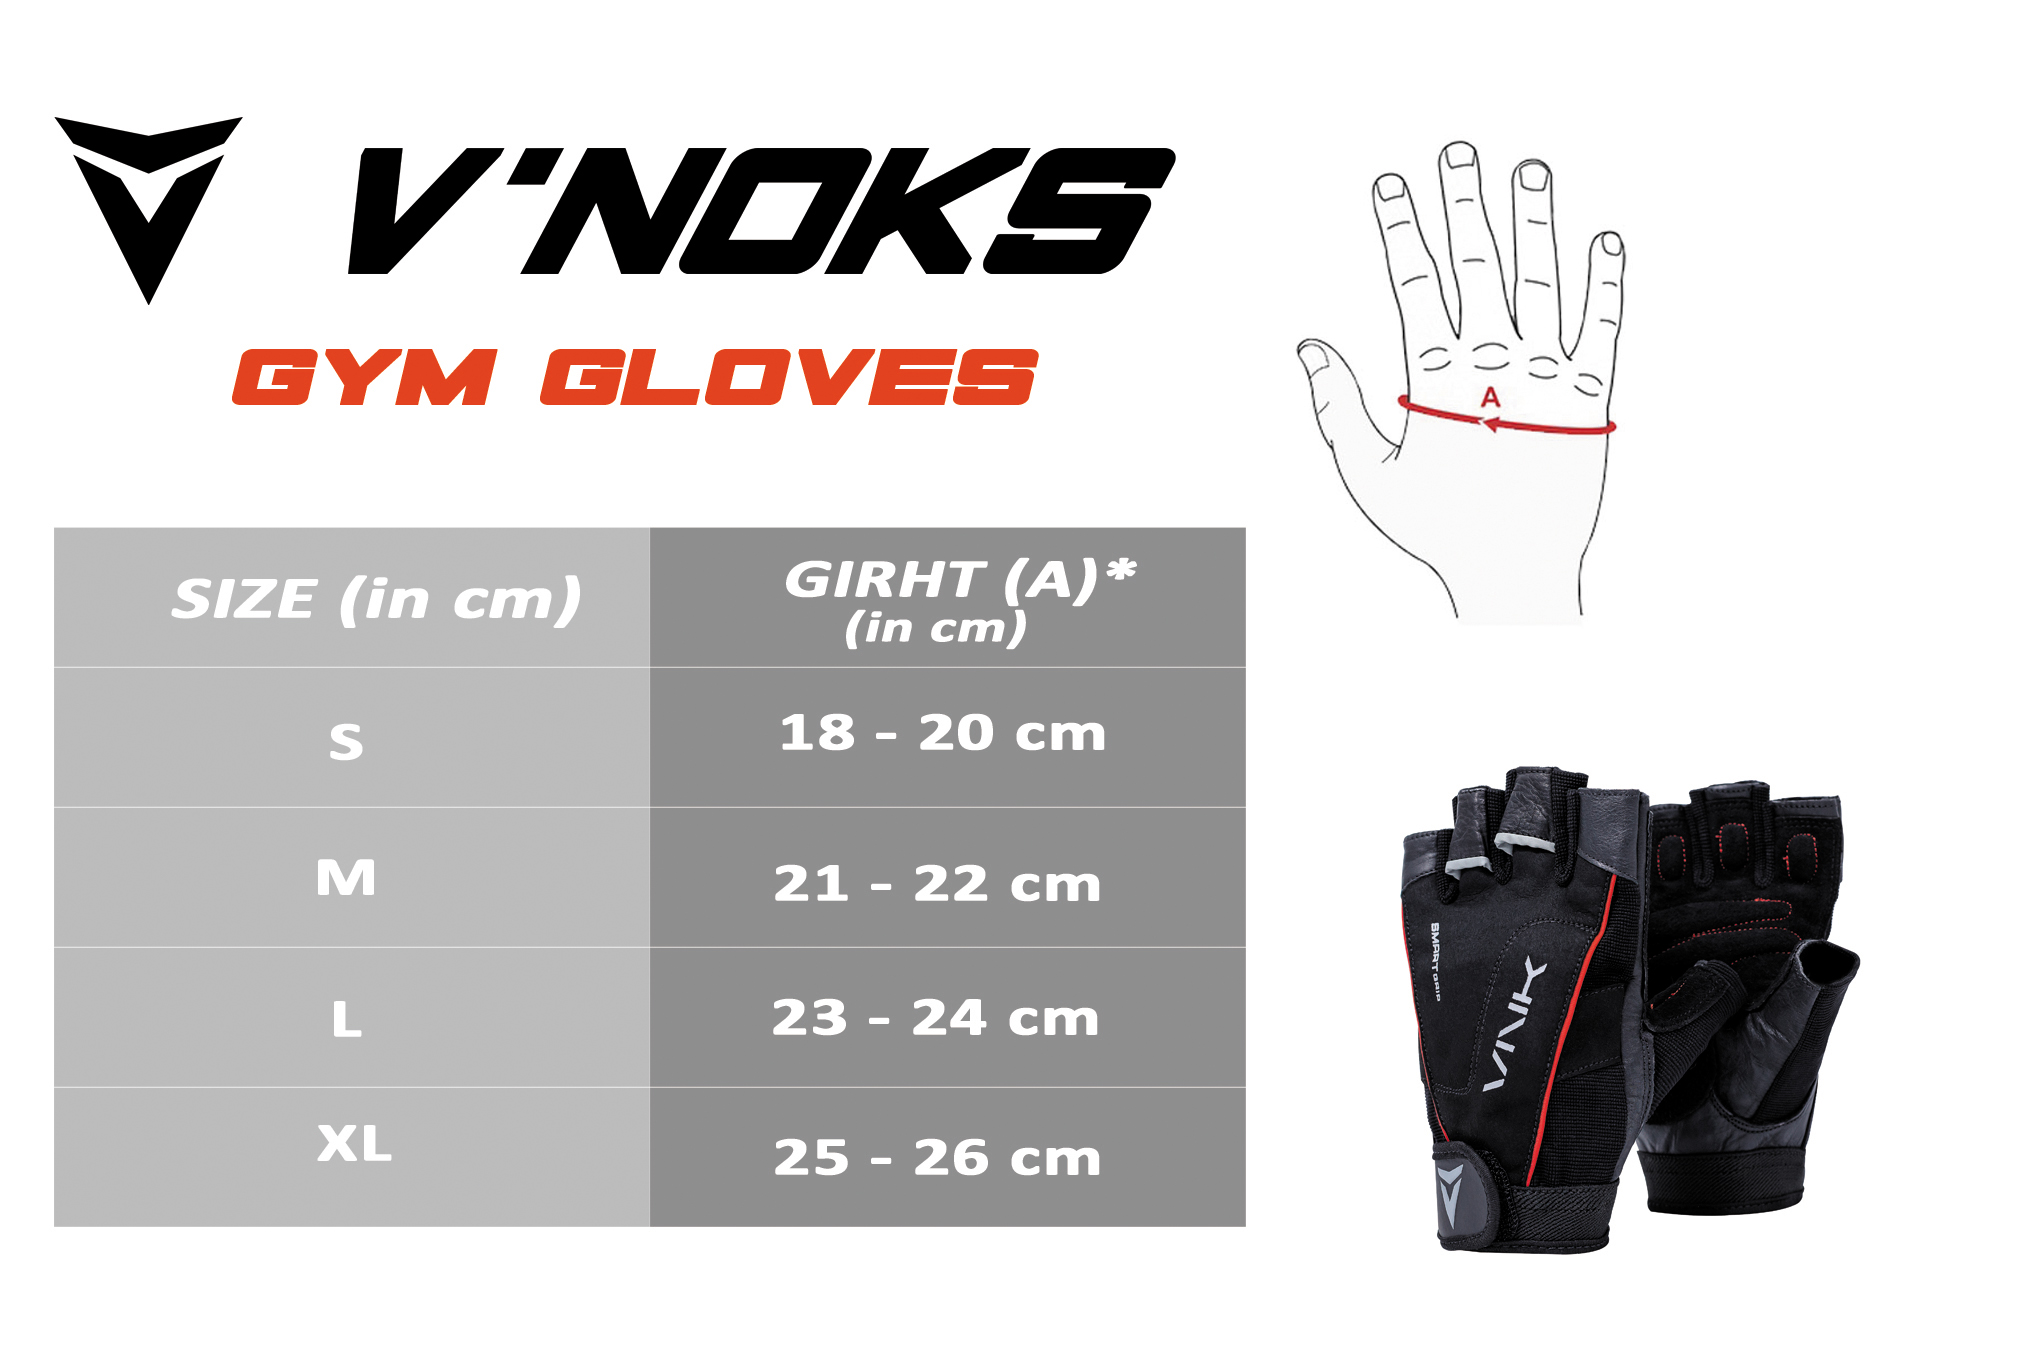 VNK Pro Gym Gloves size chart